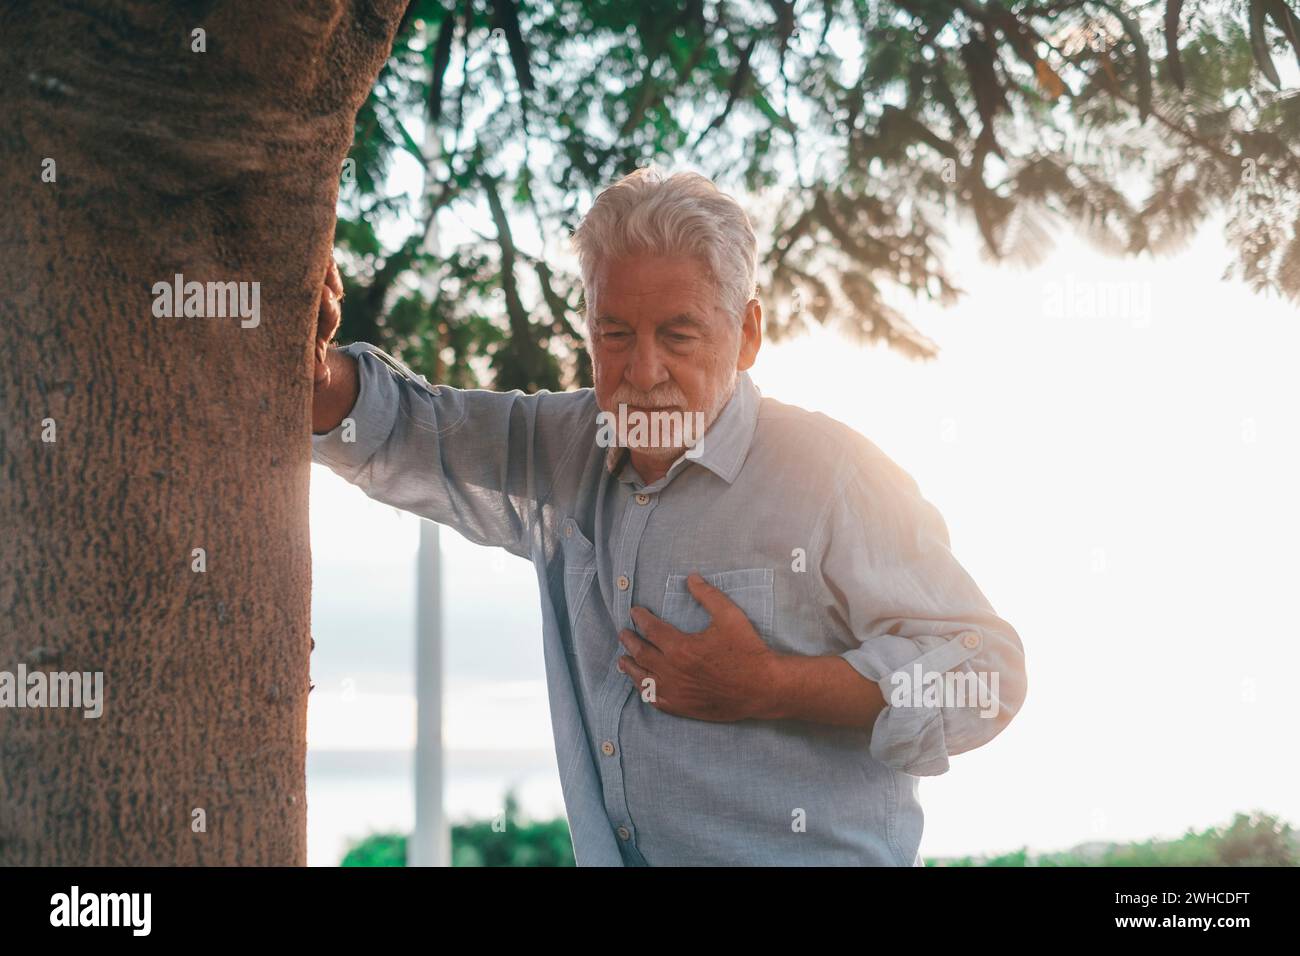 Kopfaufnahme Nahaufnahme Portrait kranker alter Mann, der sich schlecht fühlt, berührt seine Brust im Park. Müder reifer Mann, der neben einem Baum ruht. Stockfoto